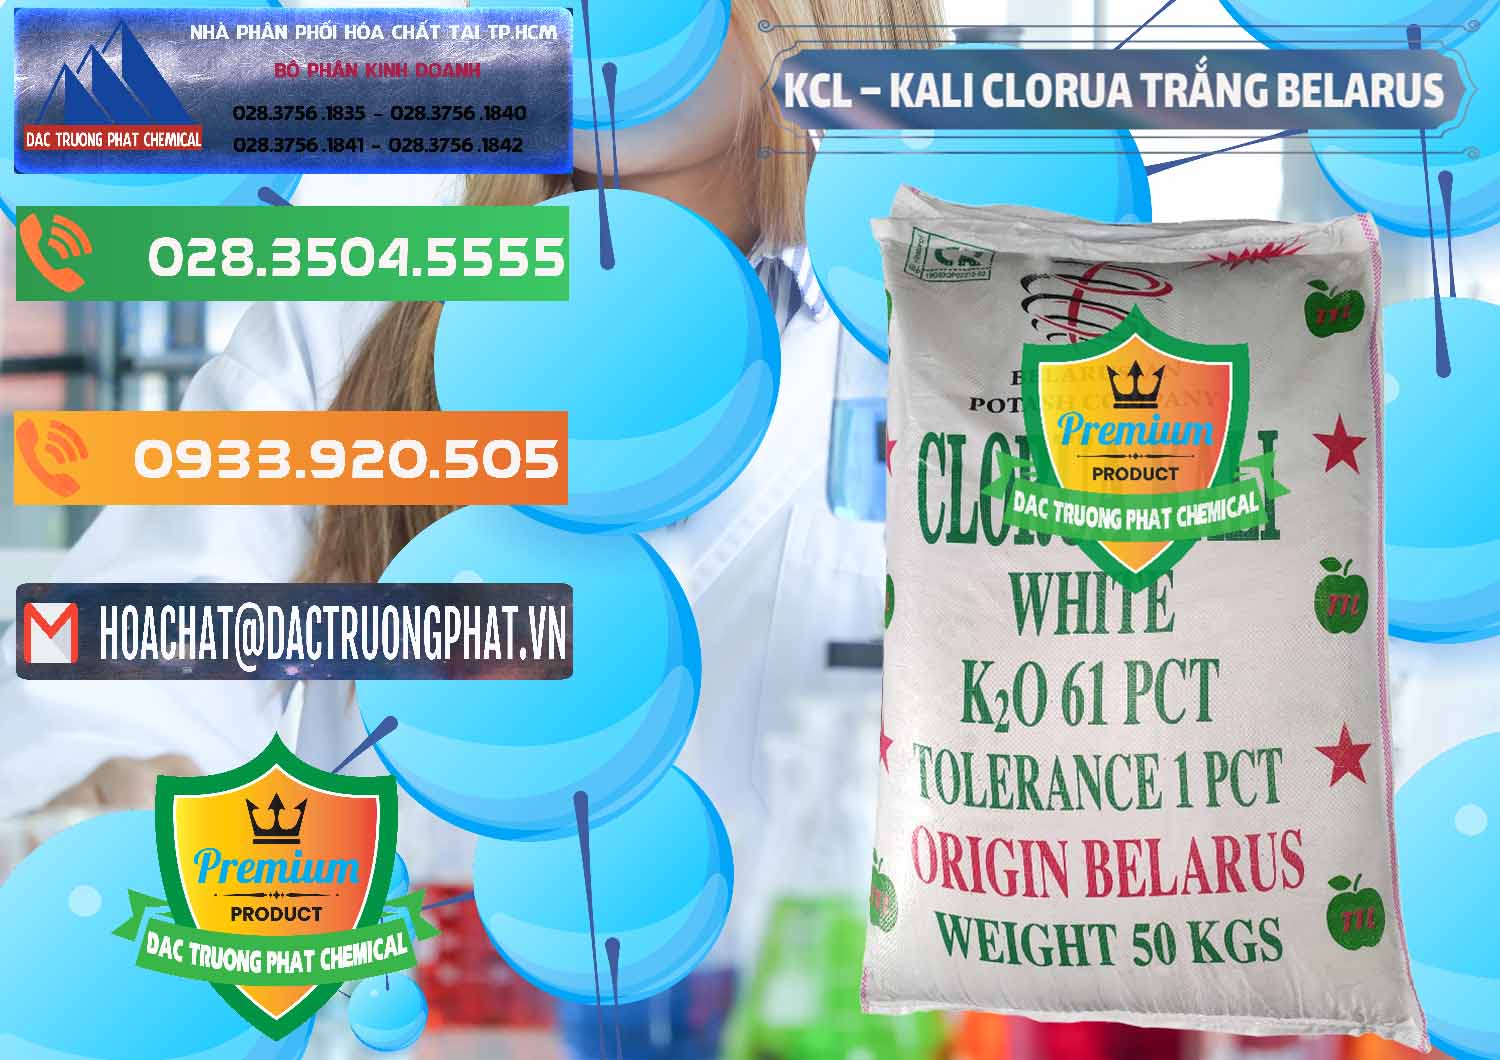 Nơi chuyên nhập khẩu và bán KCL – Kali Clorua Trắng Belarus - 0085 - Nơi phân phối & kinh doanh hóa chất tại TP.HCM - hoachatxulynuoc.com.vn